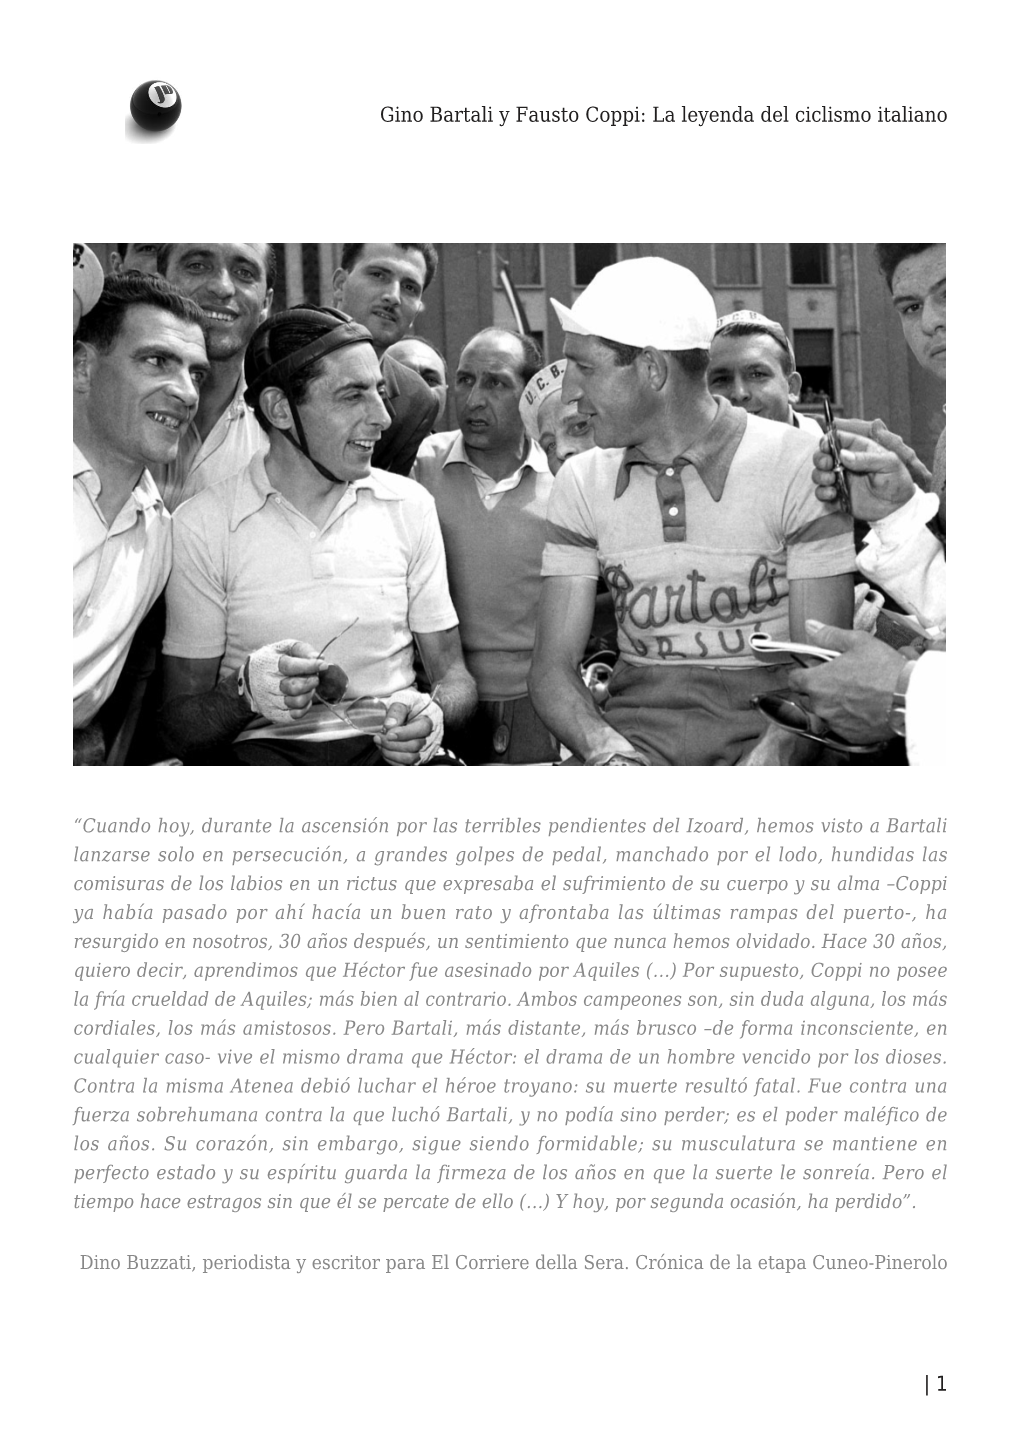 Gino Bartali Y Fausto Coppi: La Leyenda Del Ciclismo Italiano